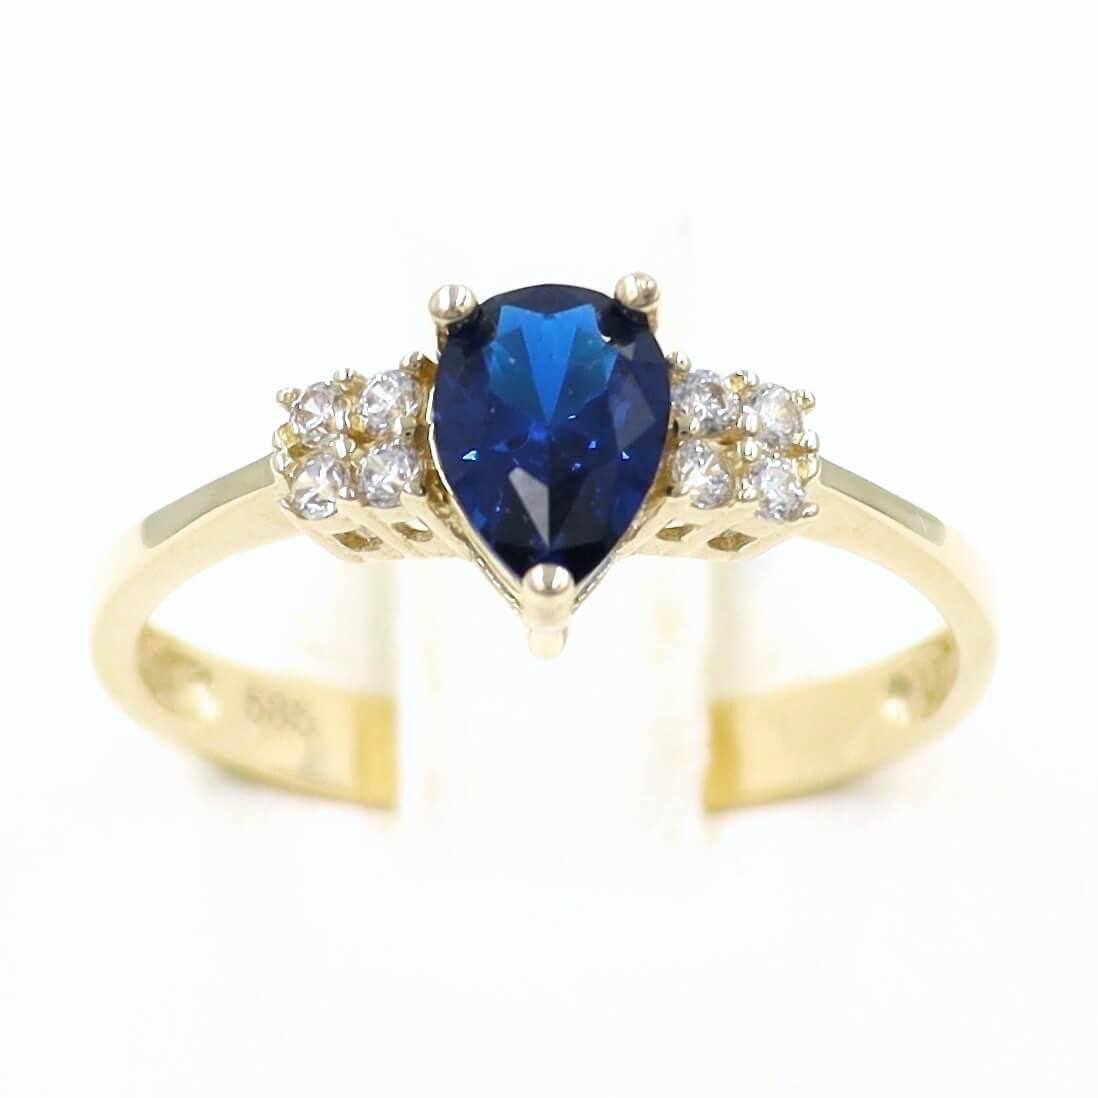 Δαχτυλίδι χρυσό με σκούρα μπλε πέτρα σε σχήμα δακρυ